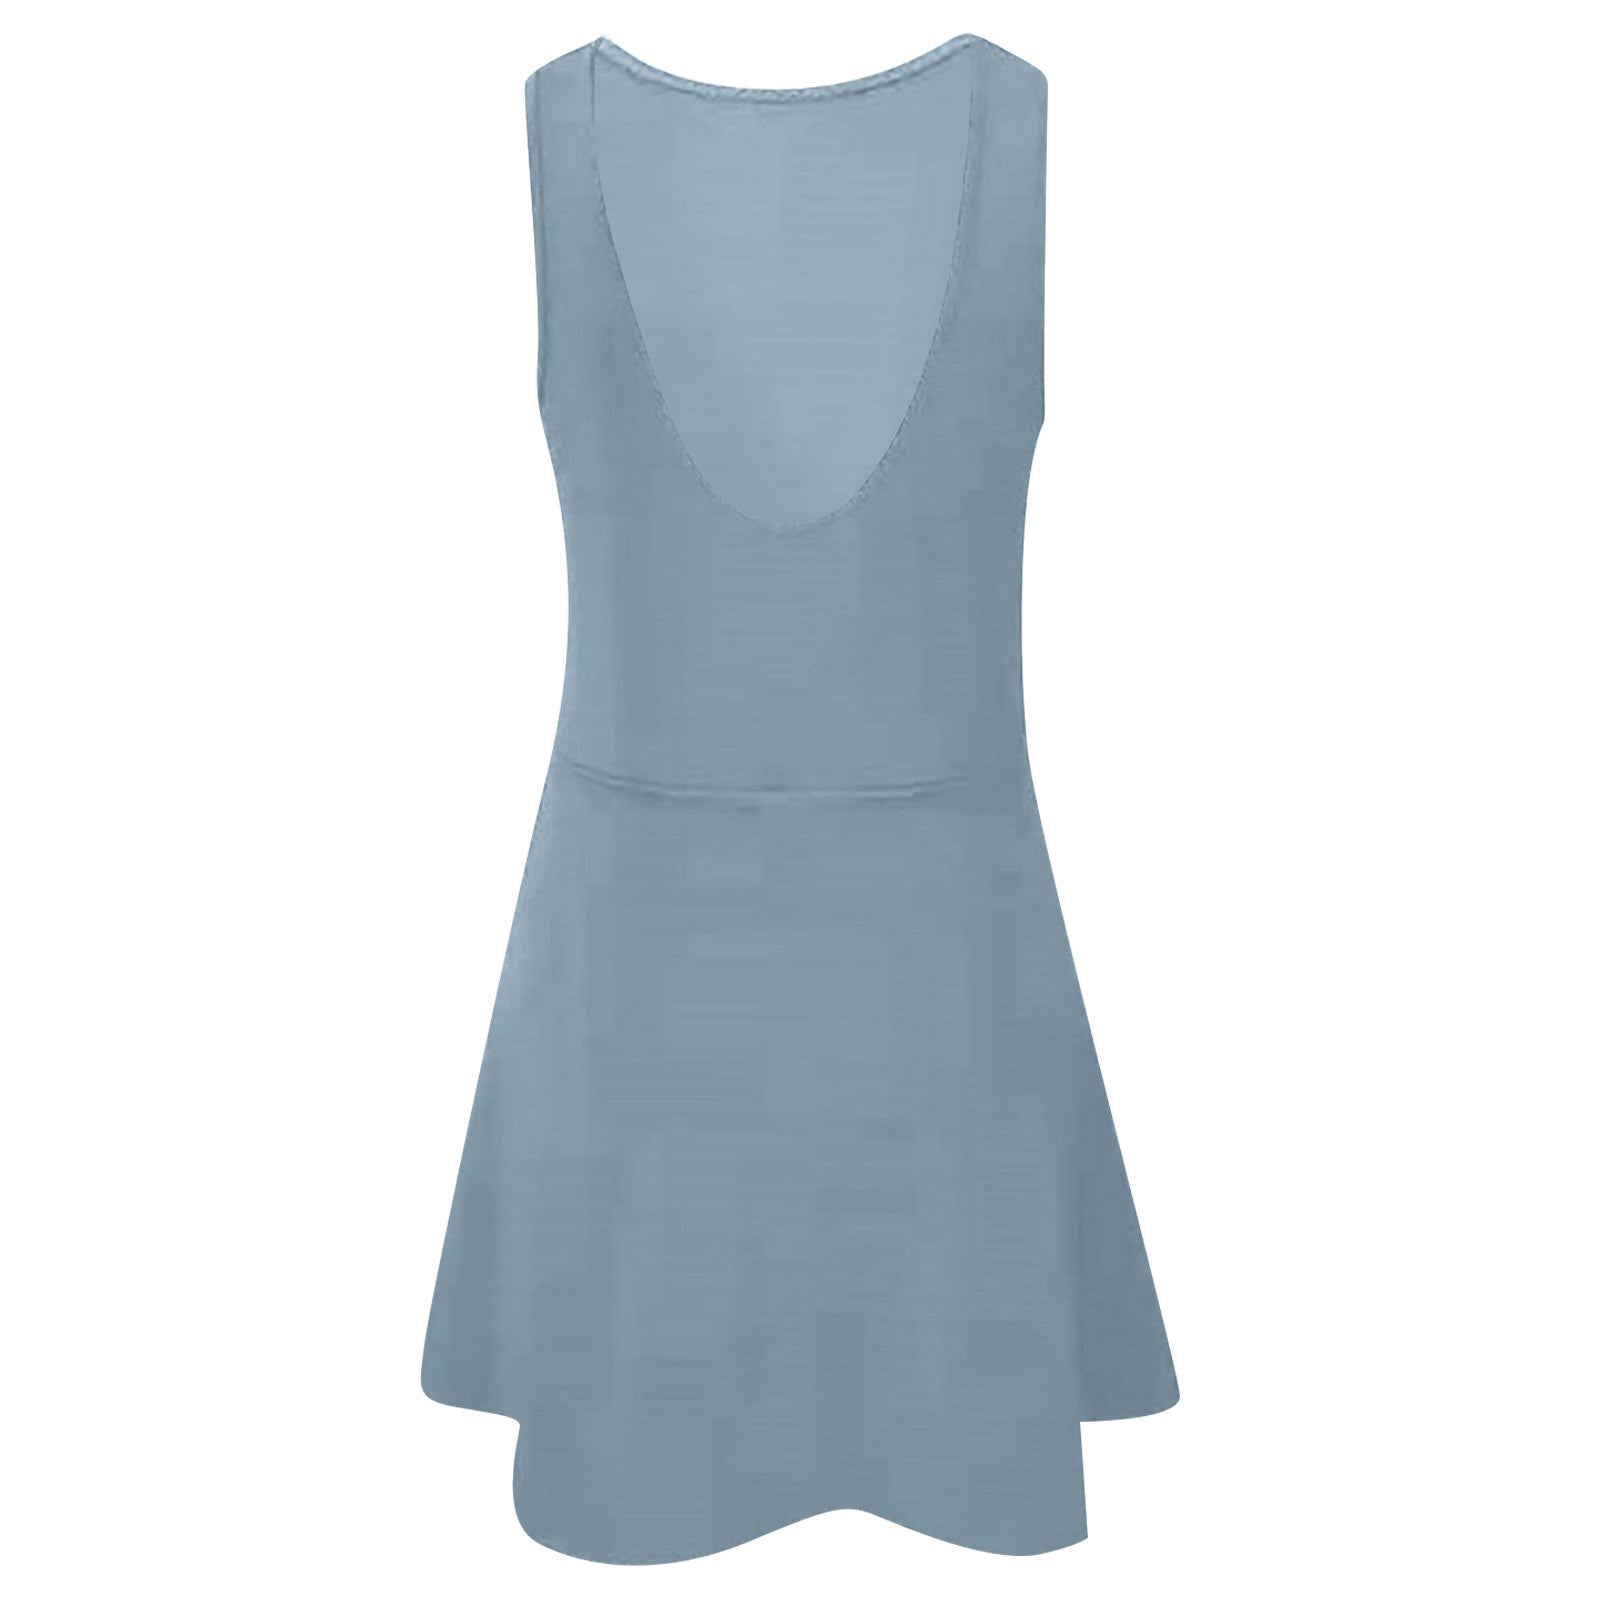 U-shaped Backless One-piece Yoga Wear Dress